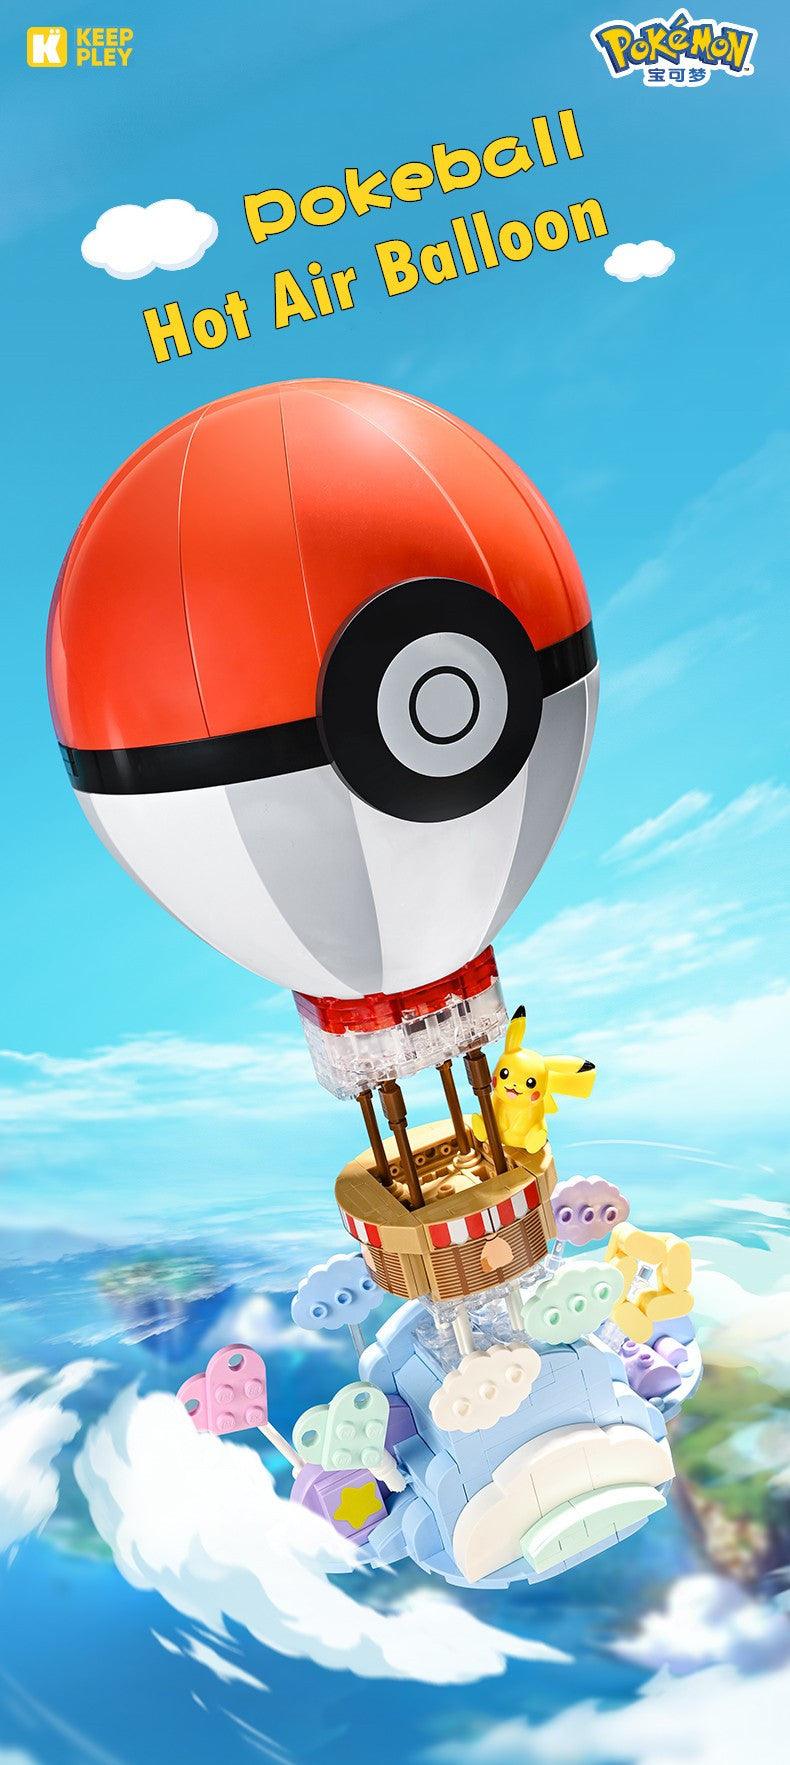 Keeppley - Pikachu Pokeball Hot Air Balloon Light-Up Building Blocks Set